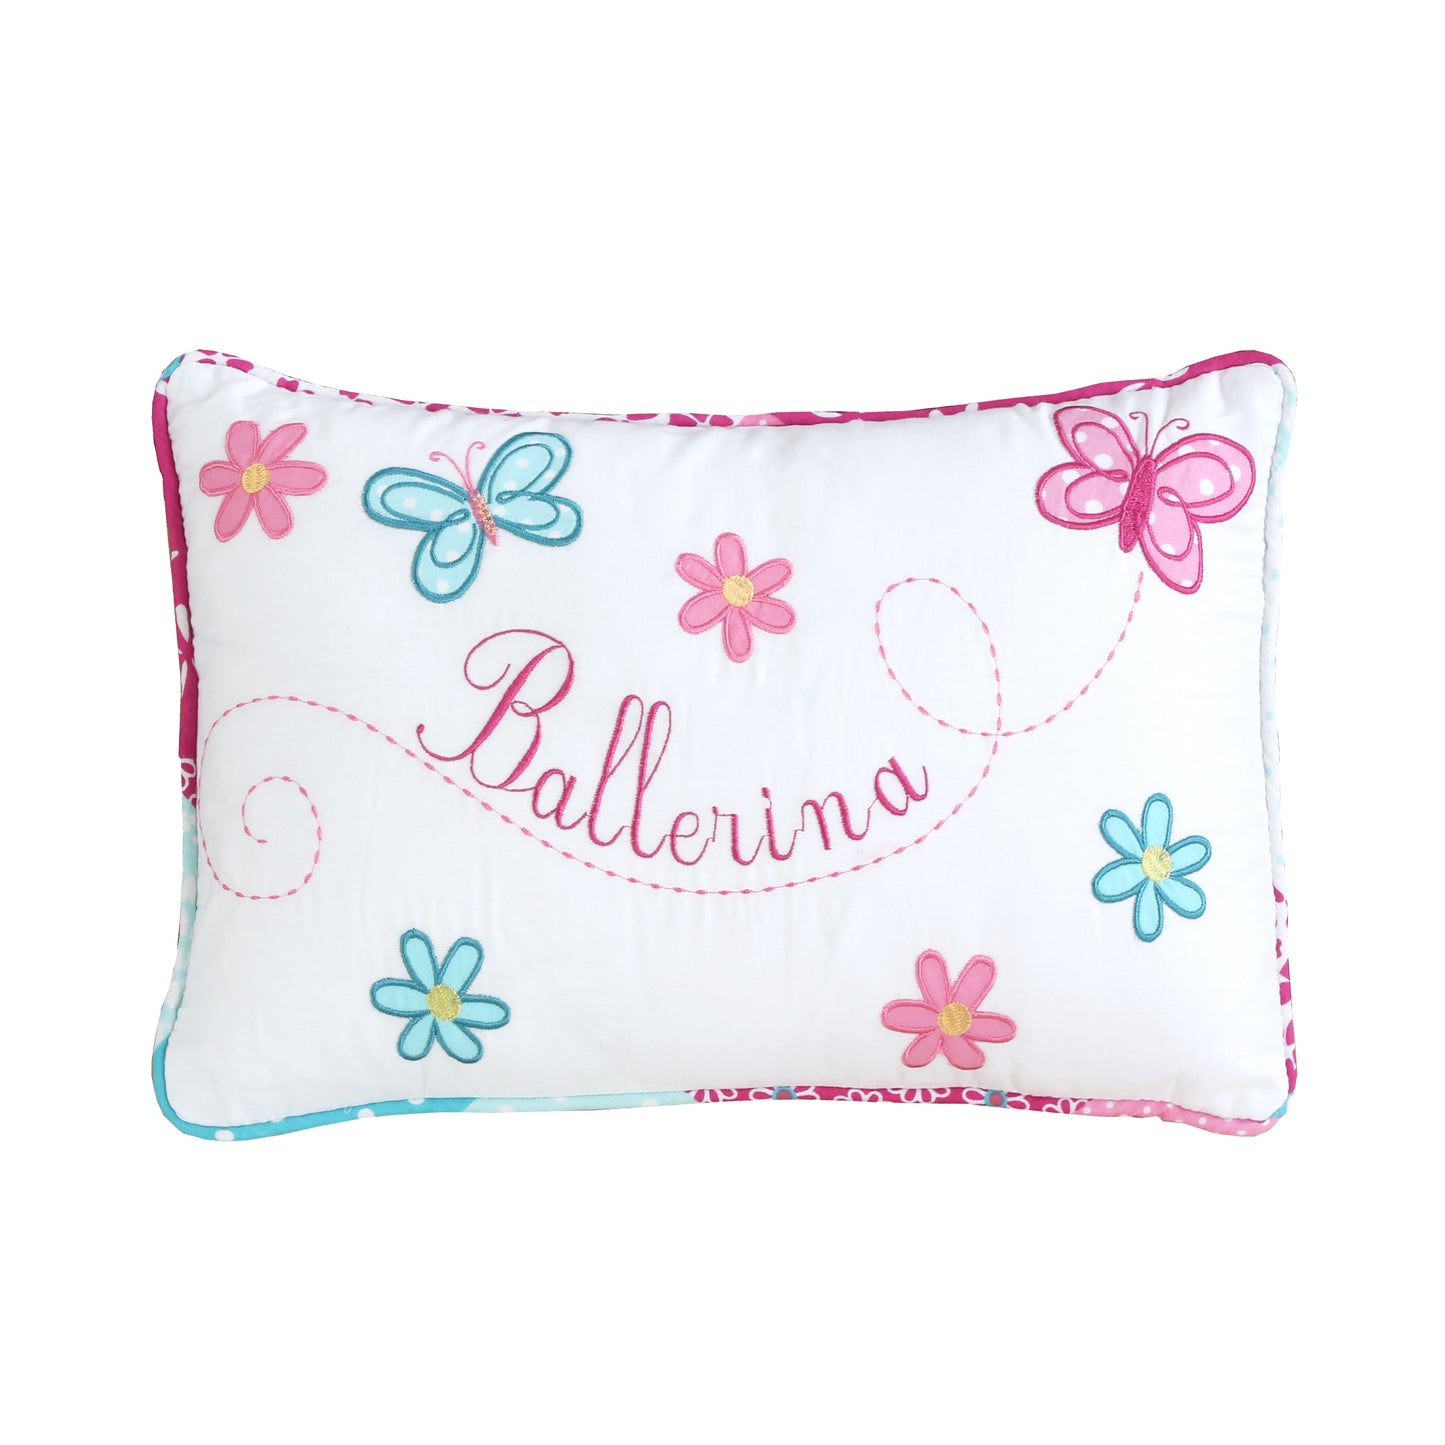 Ballerina Girl Pink Butterfly Floral Rectangular Decor Throw Pillow